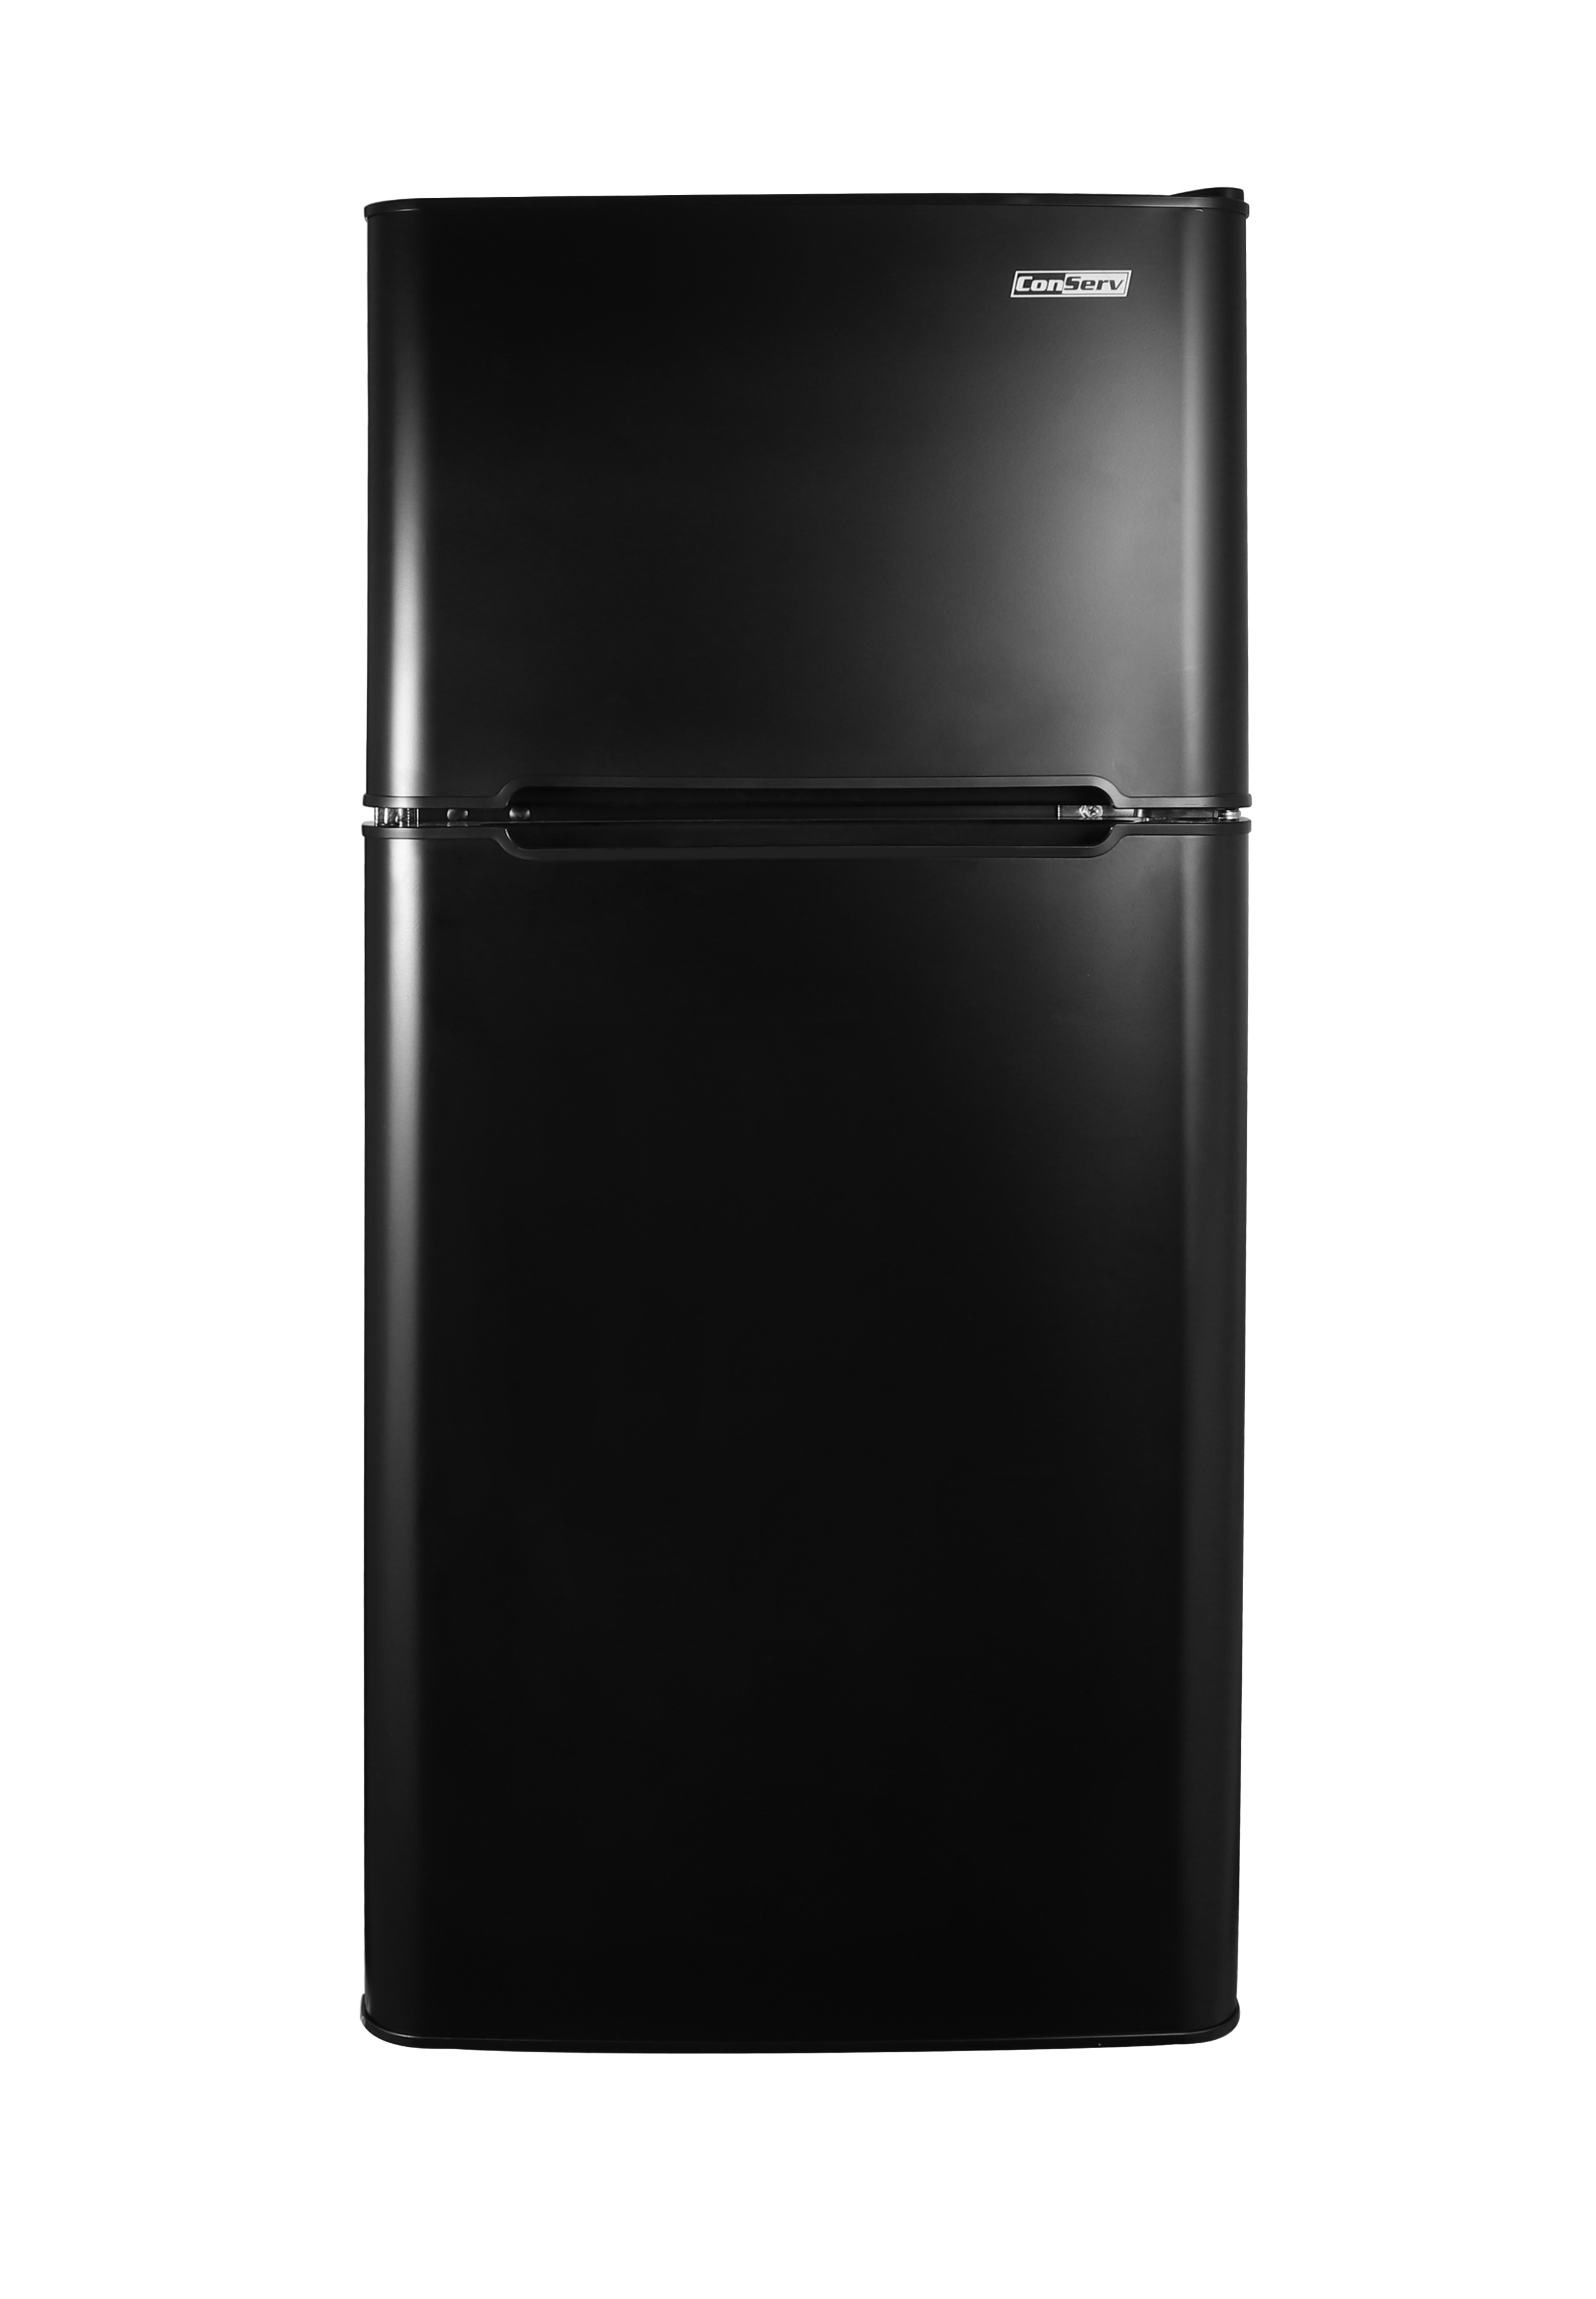 ConServ 4.5cu.ft 2 Door Mini Freestanding Refrigerator with Freezer in Black					